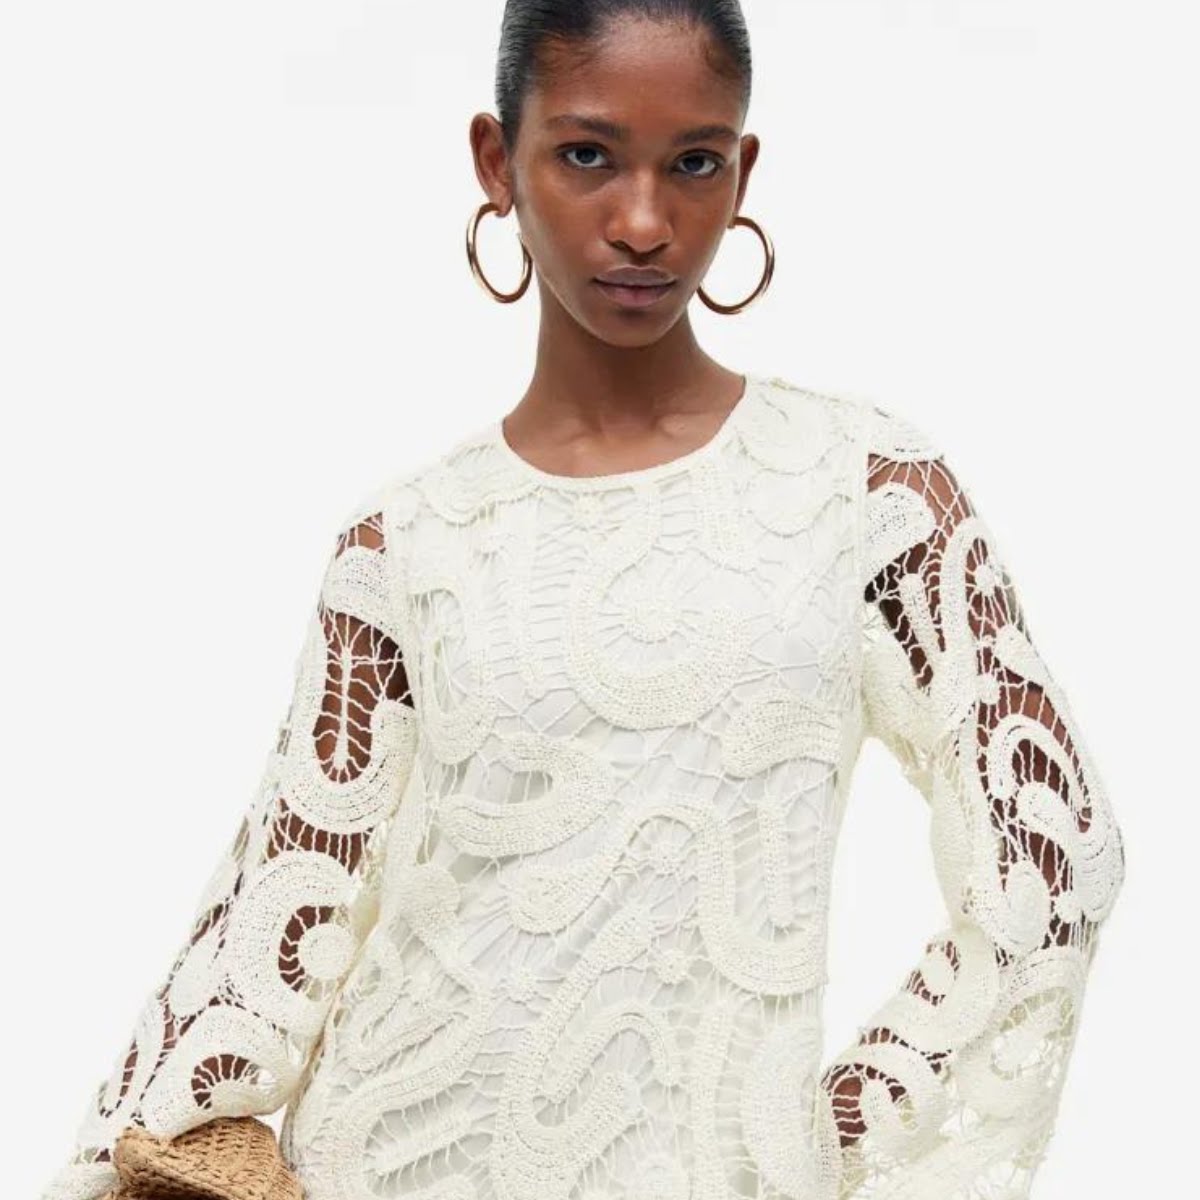 Crochet-Look A-Line Dress, €79.99